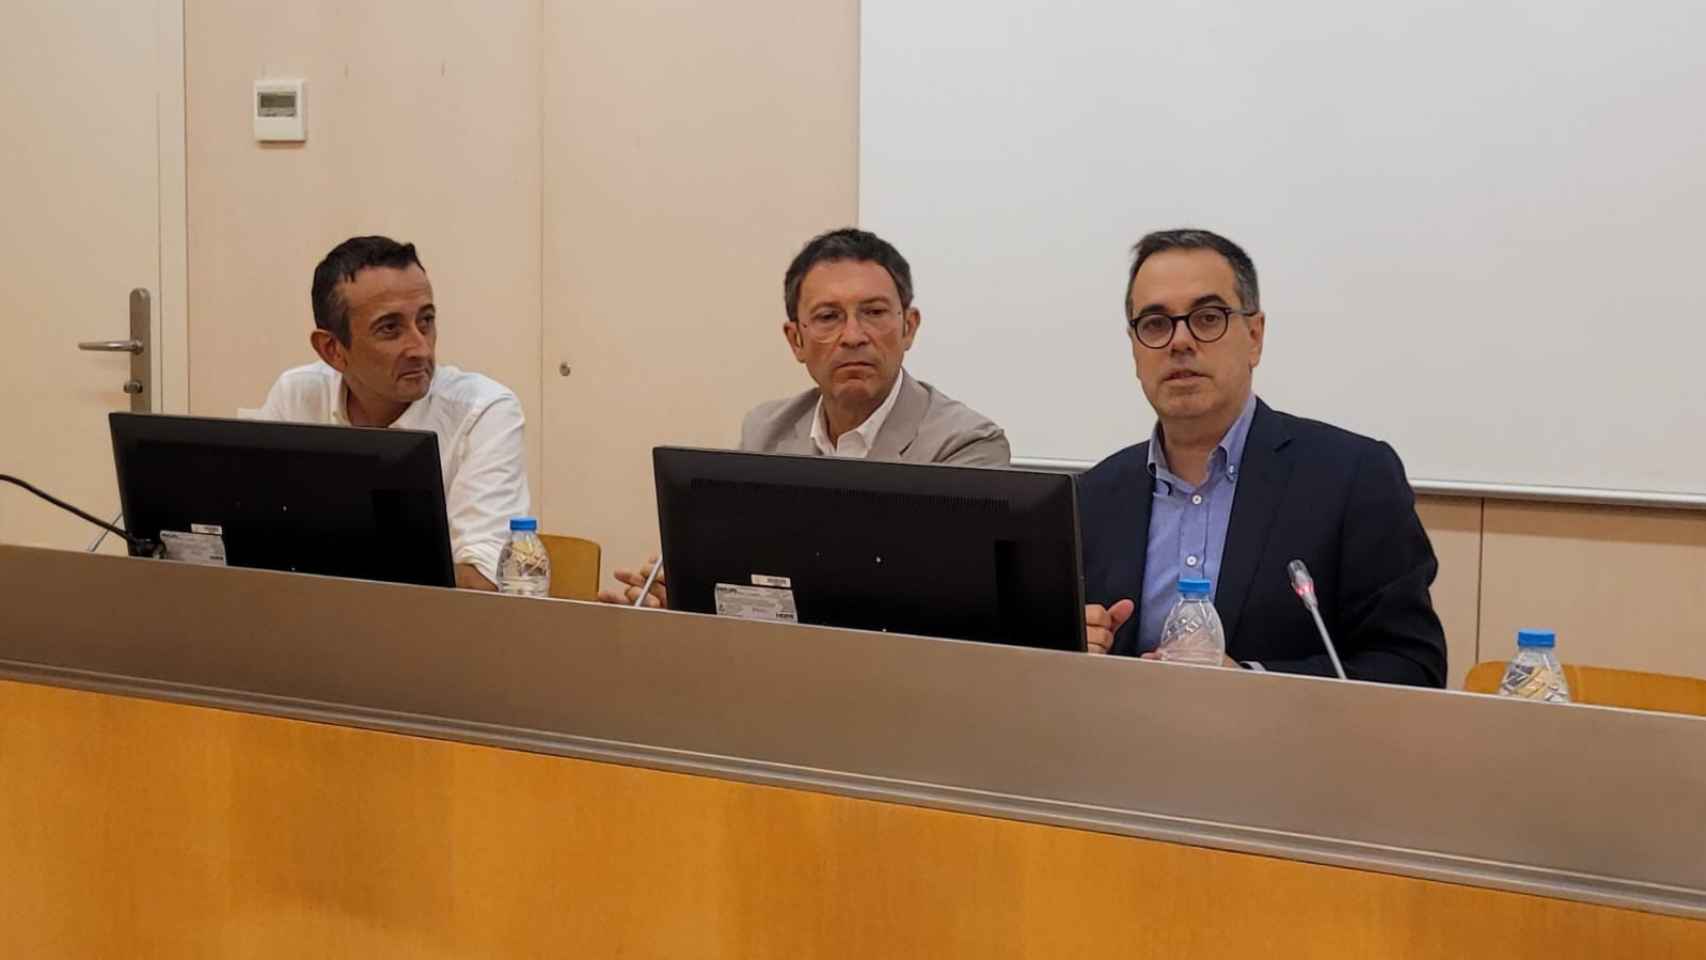 Josep Maria Sentís, Josep Maria Raya, y Carles Sala  en la presentación del estudio de UPF y APCE